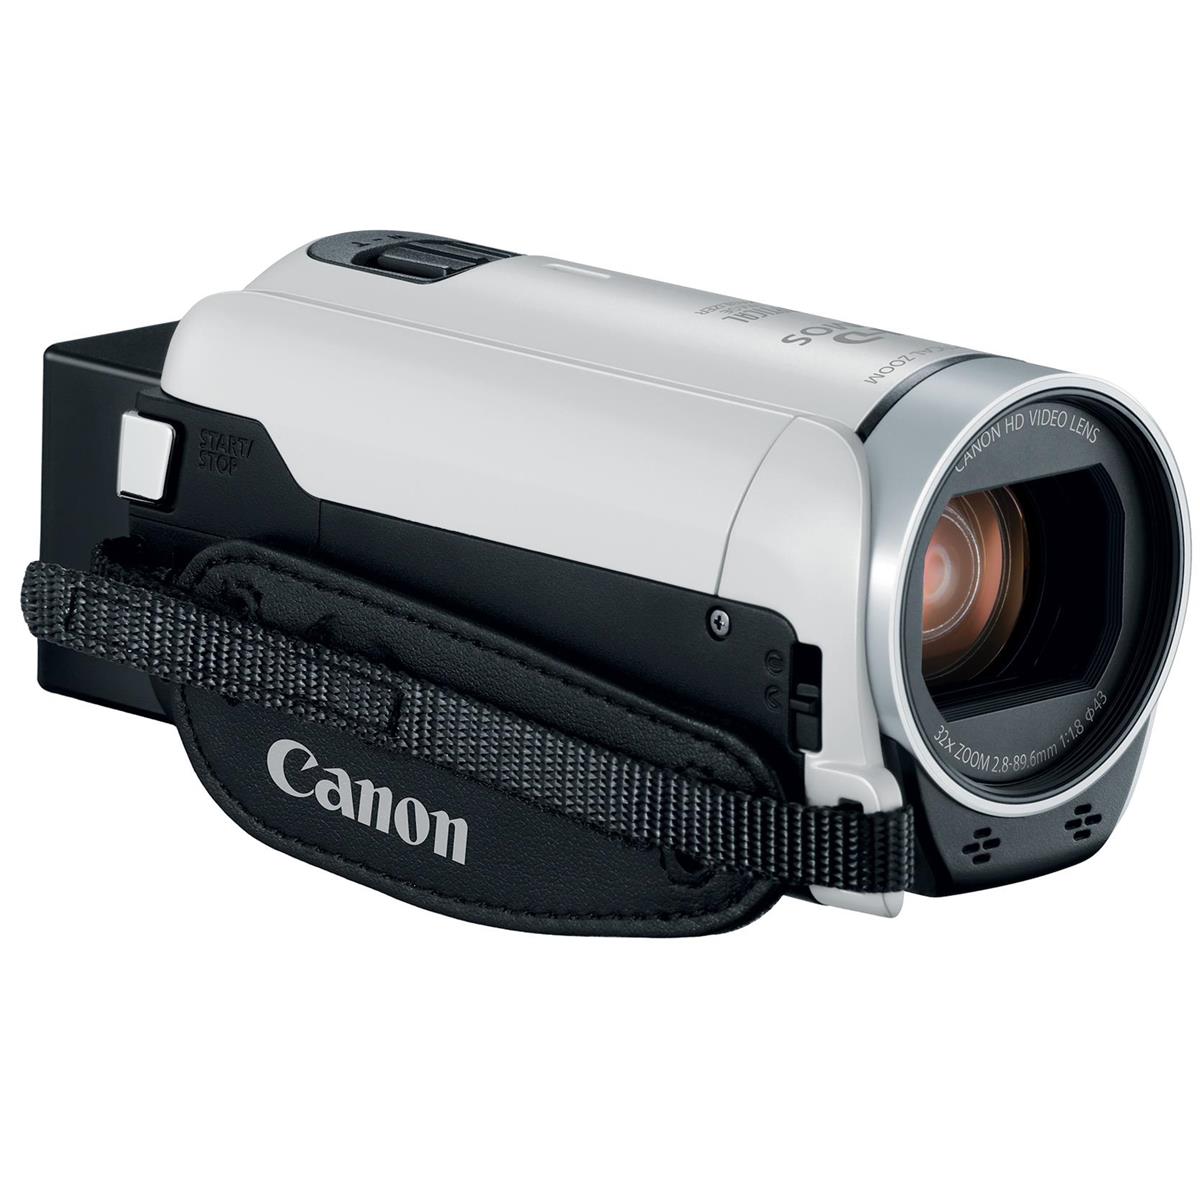 Canon VIXIA HF R800 Camcorder (White)